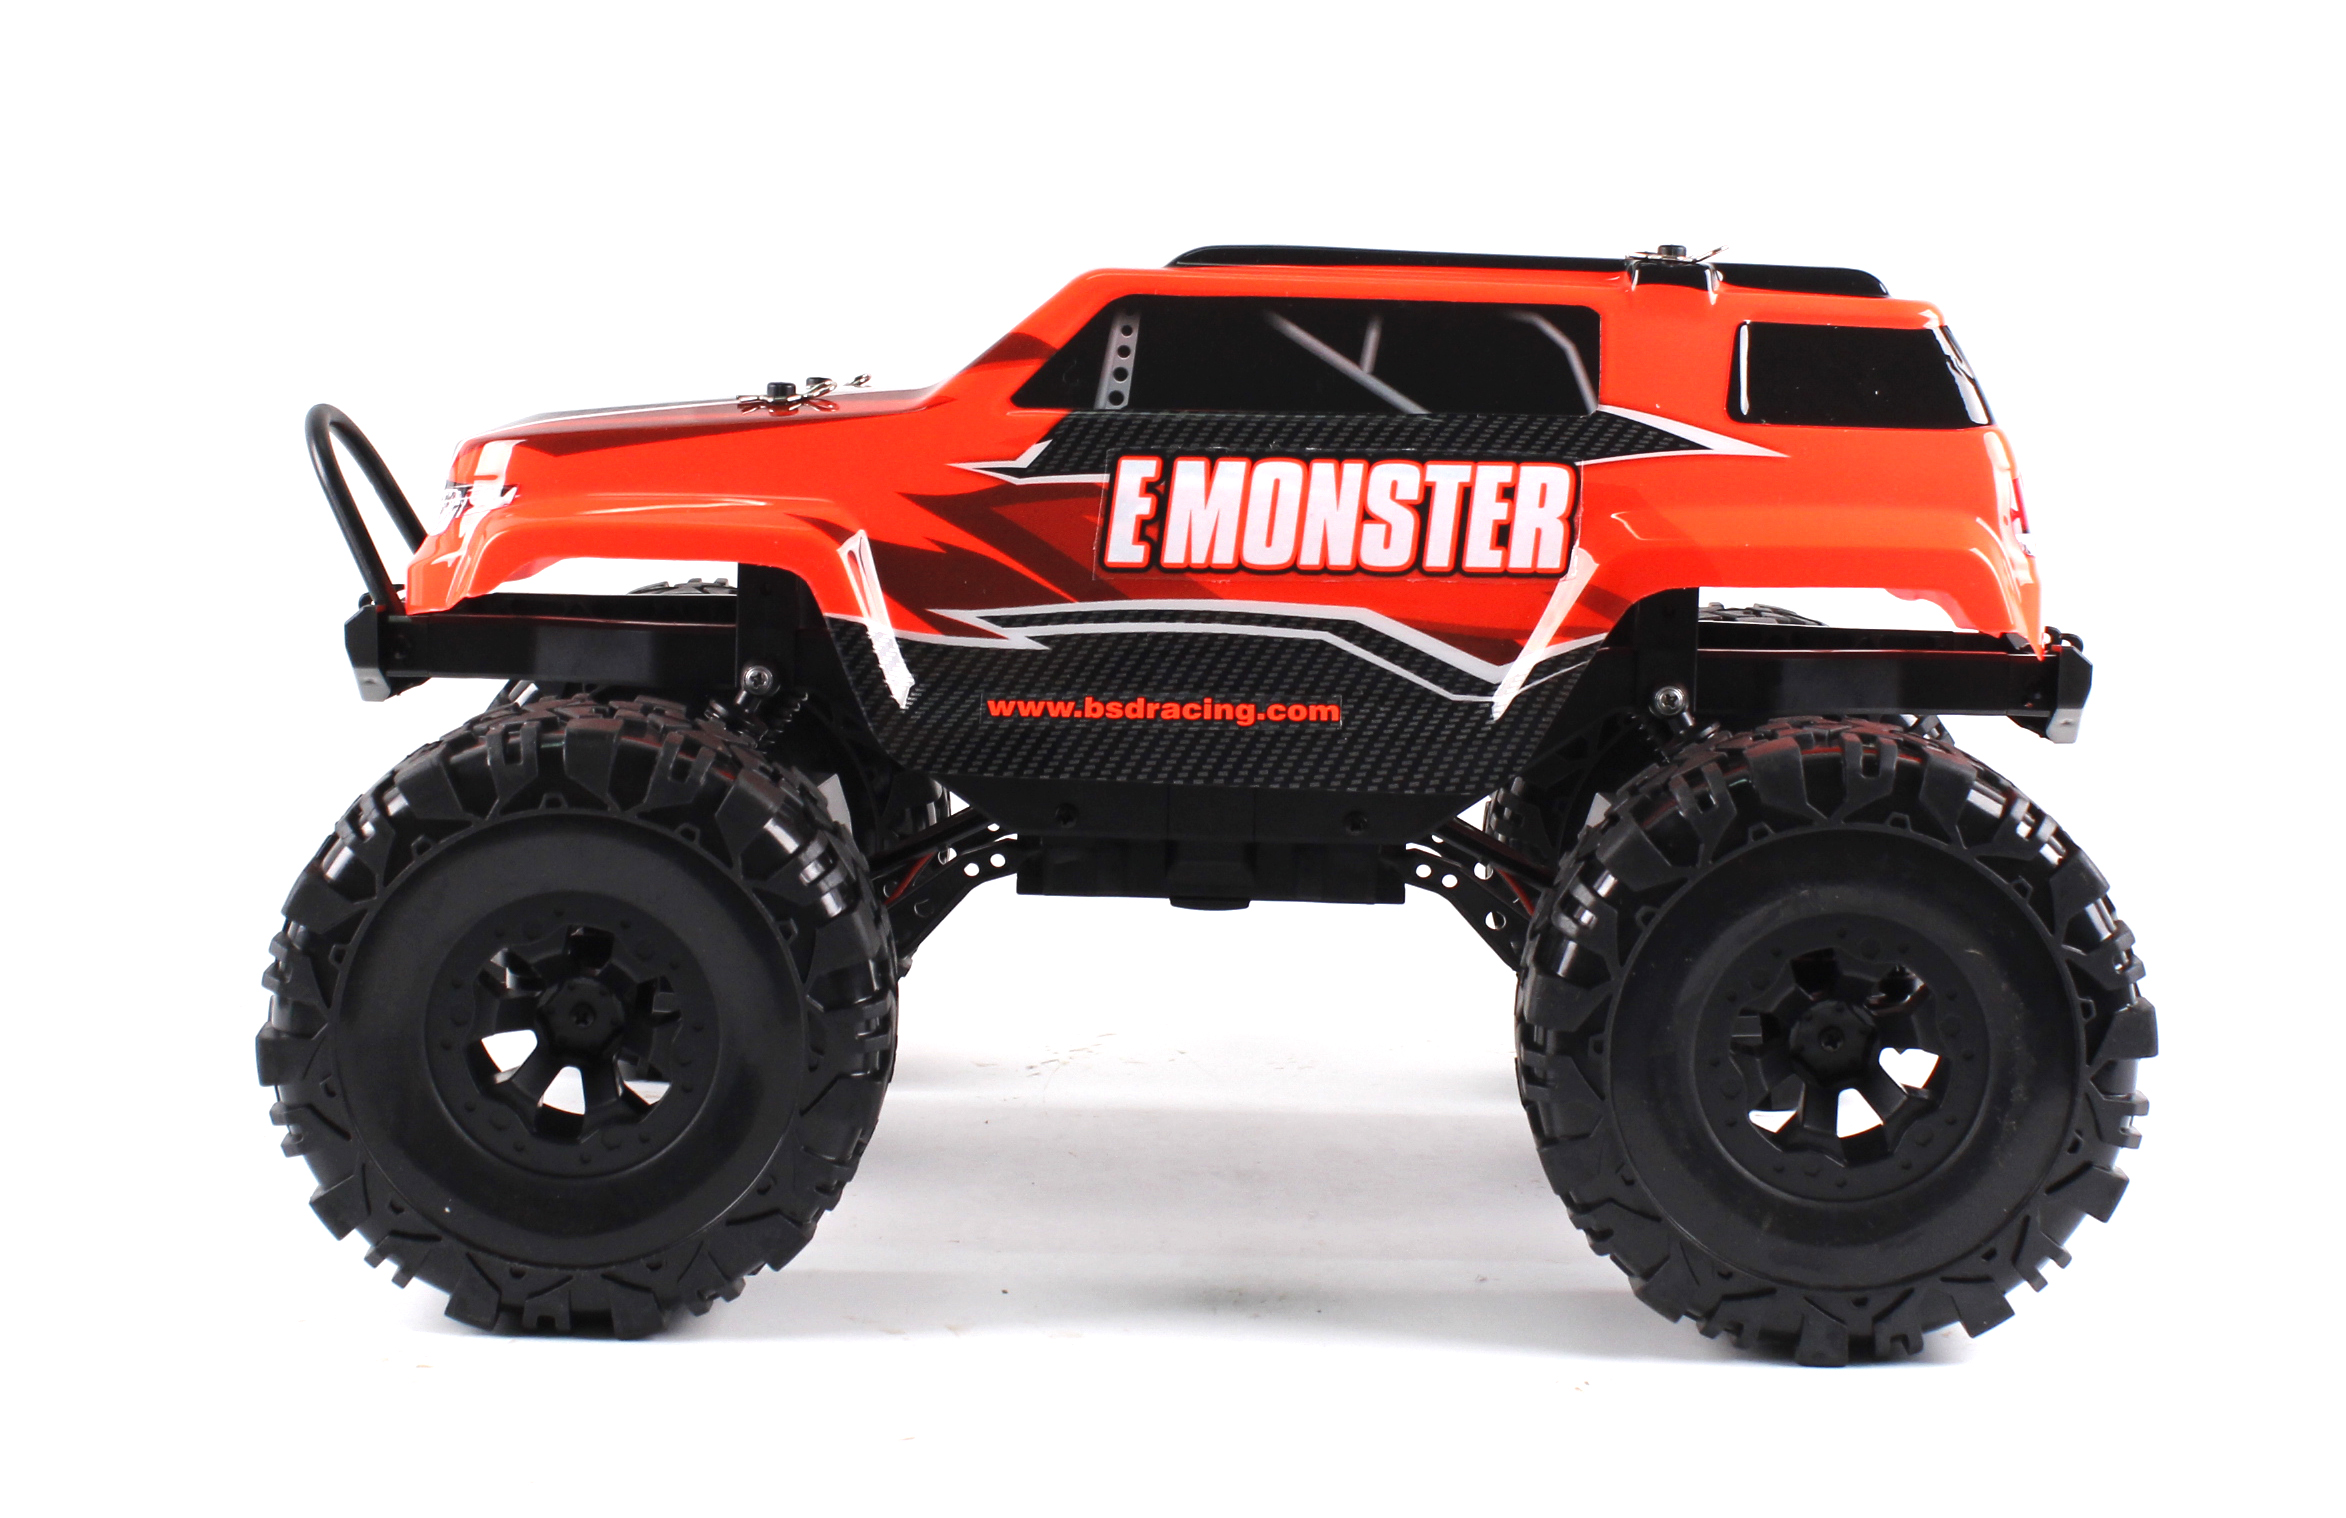  1/10 4WD E-Monster 